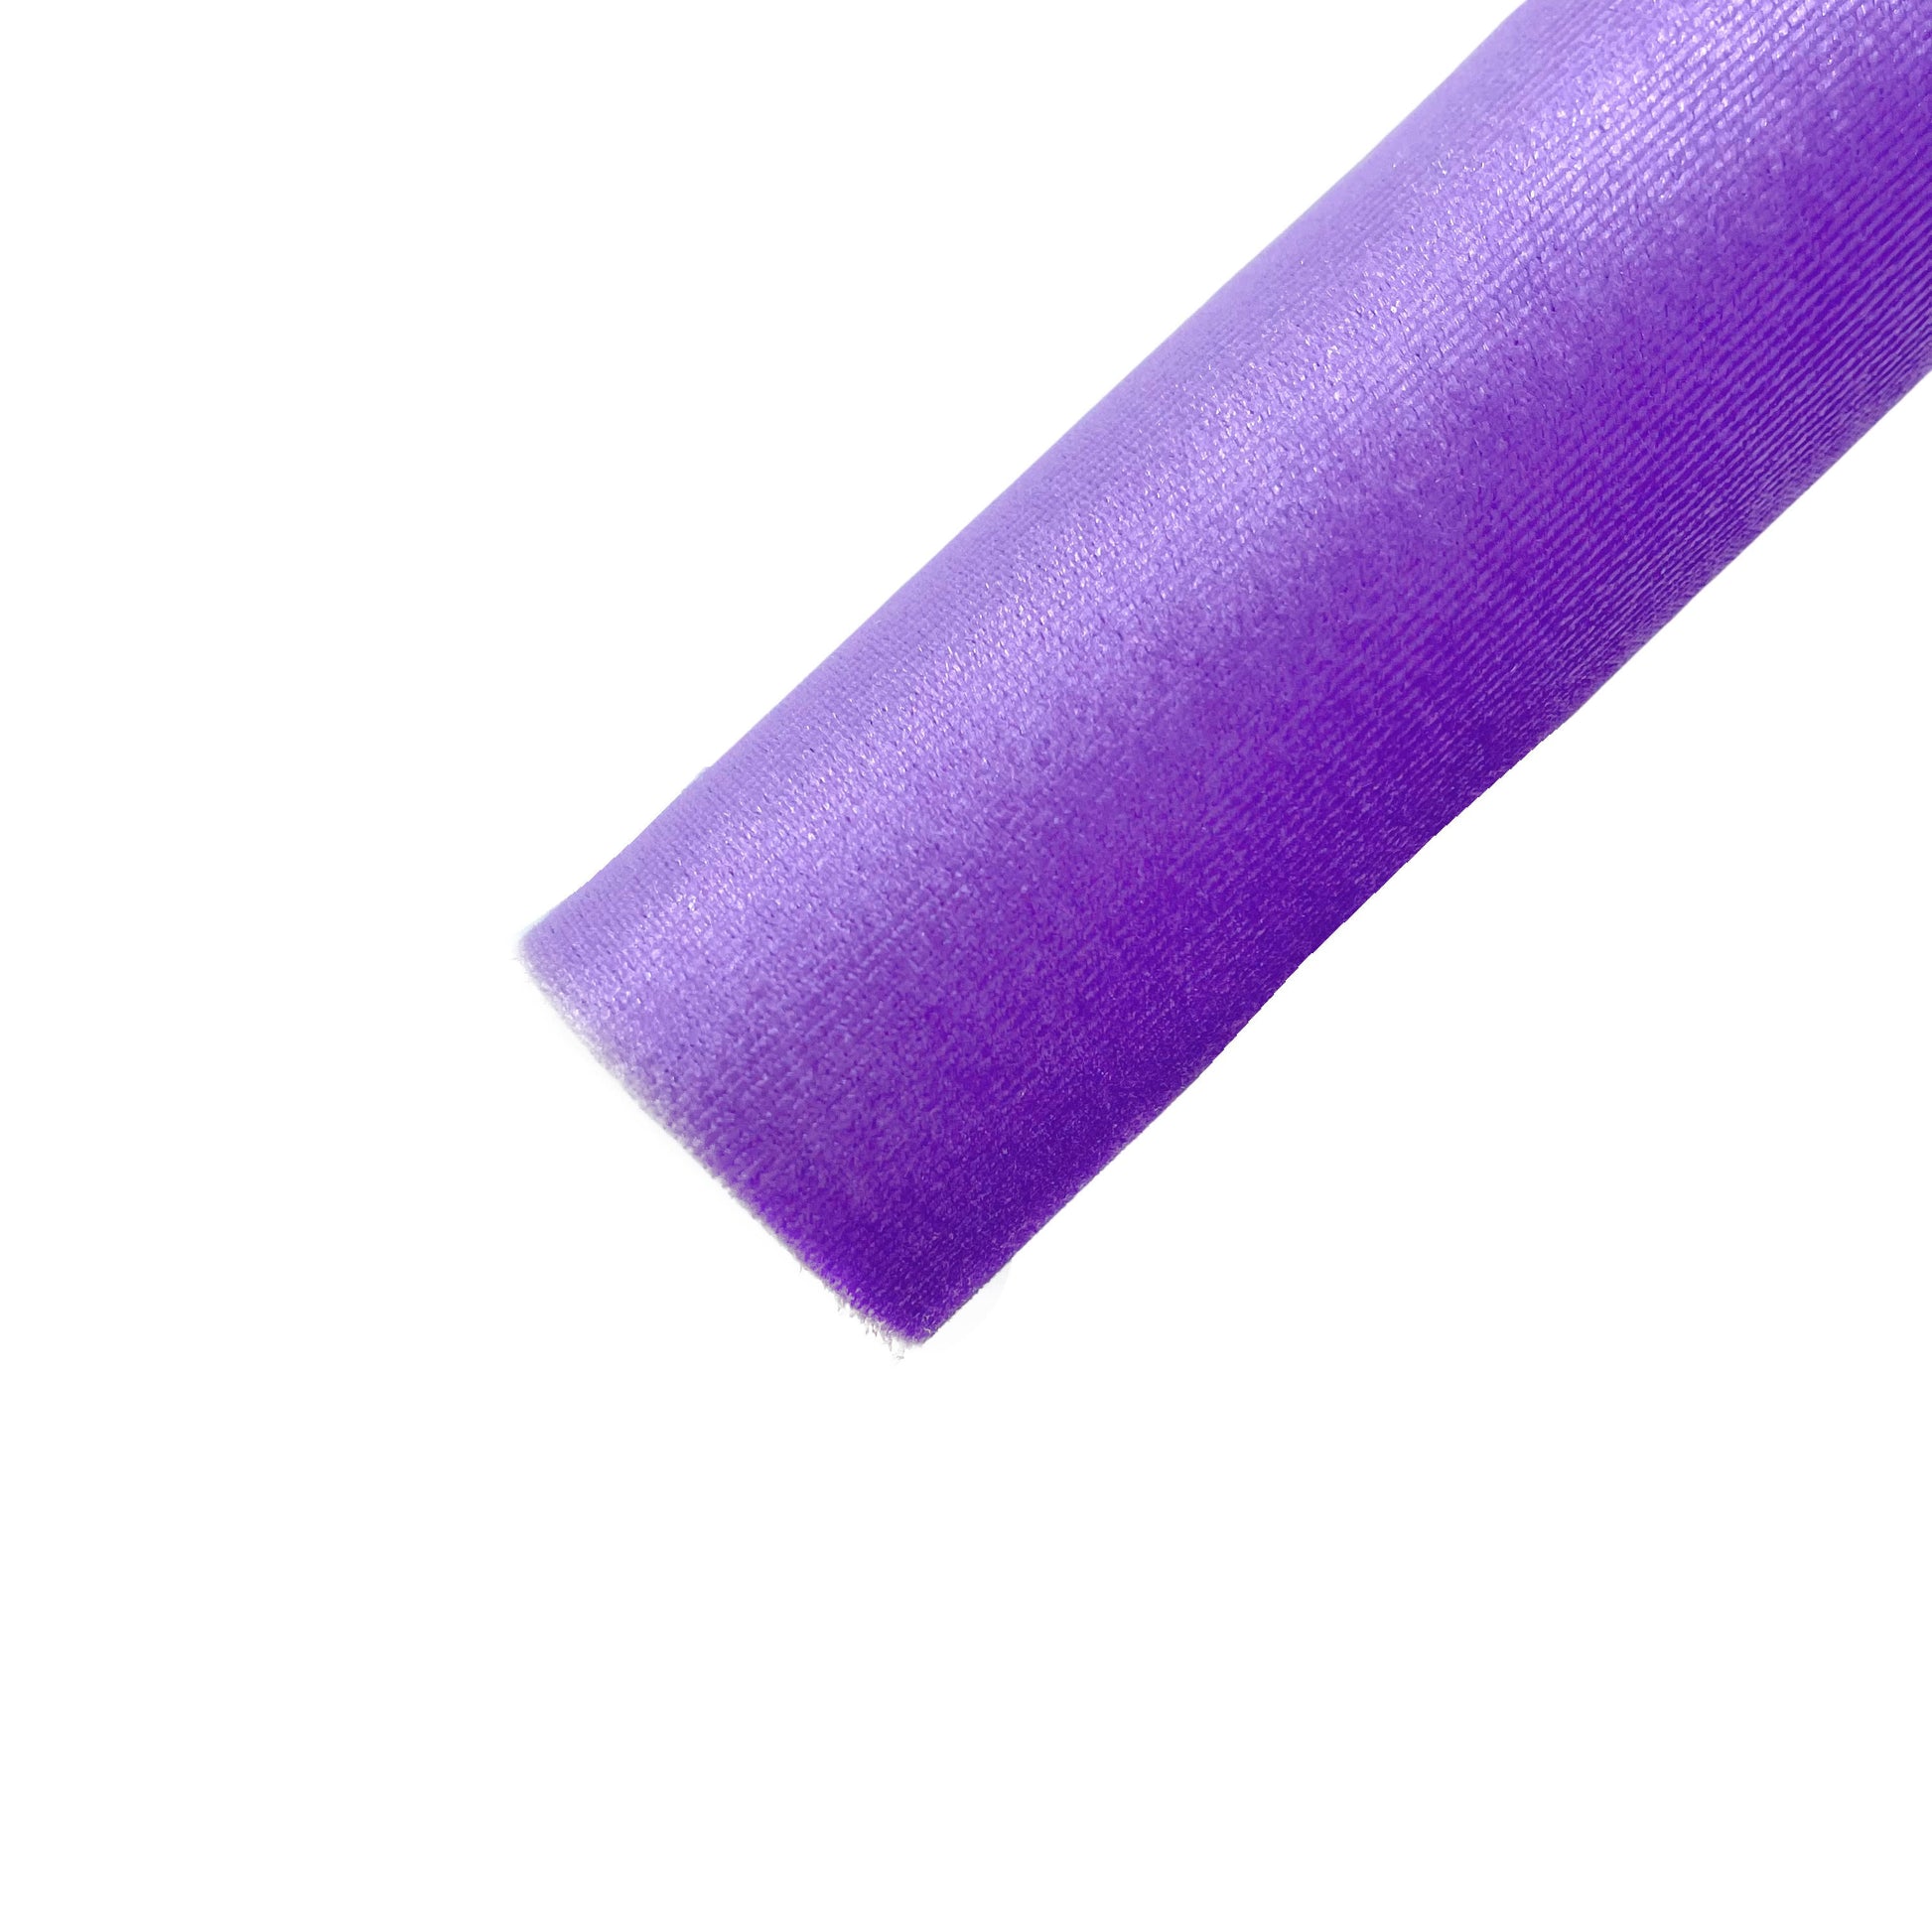 Rolled solid colored velvet sheet in violet purple.